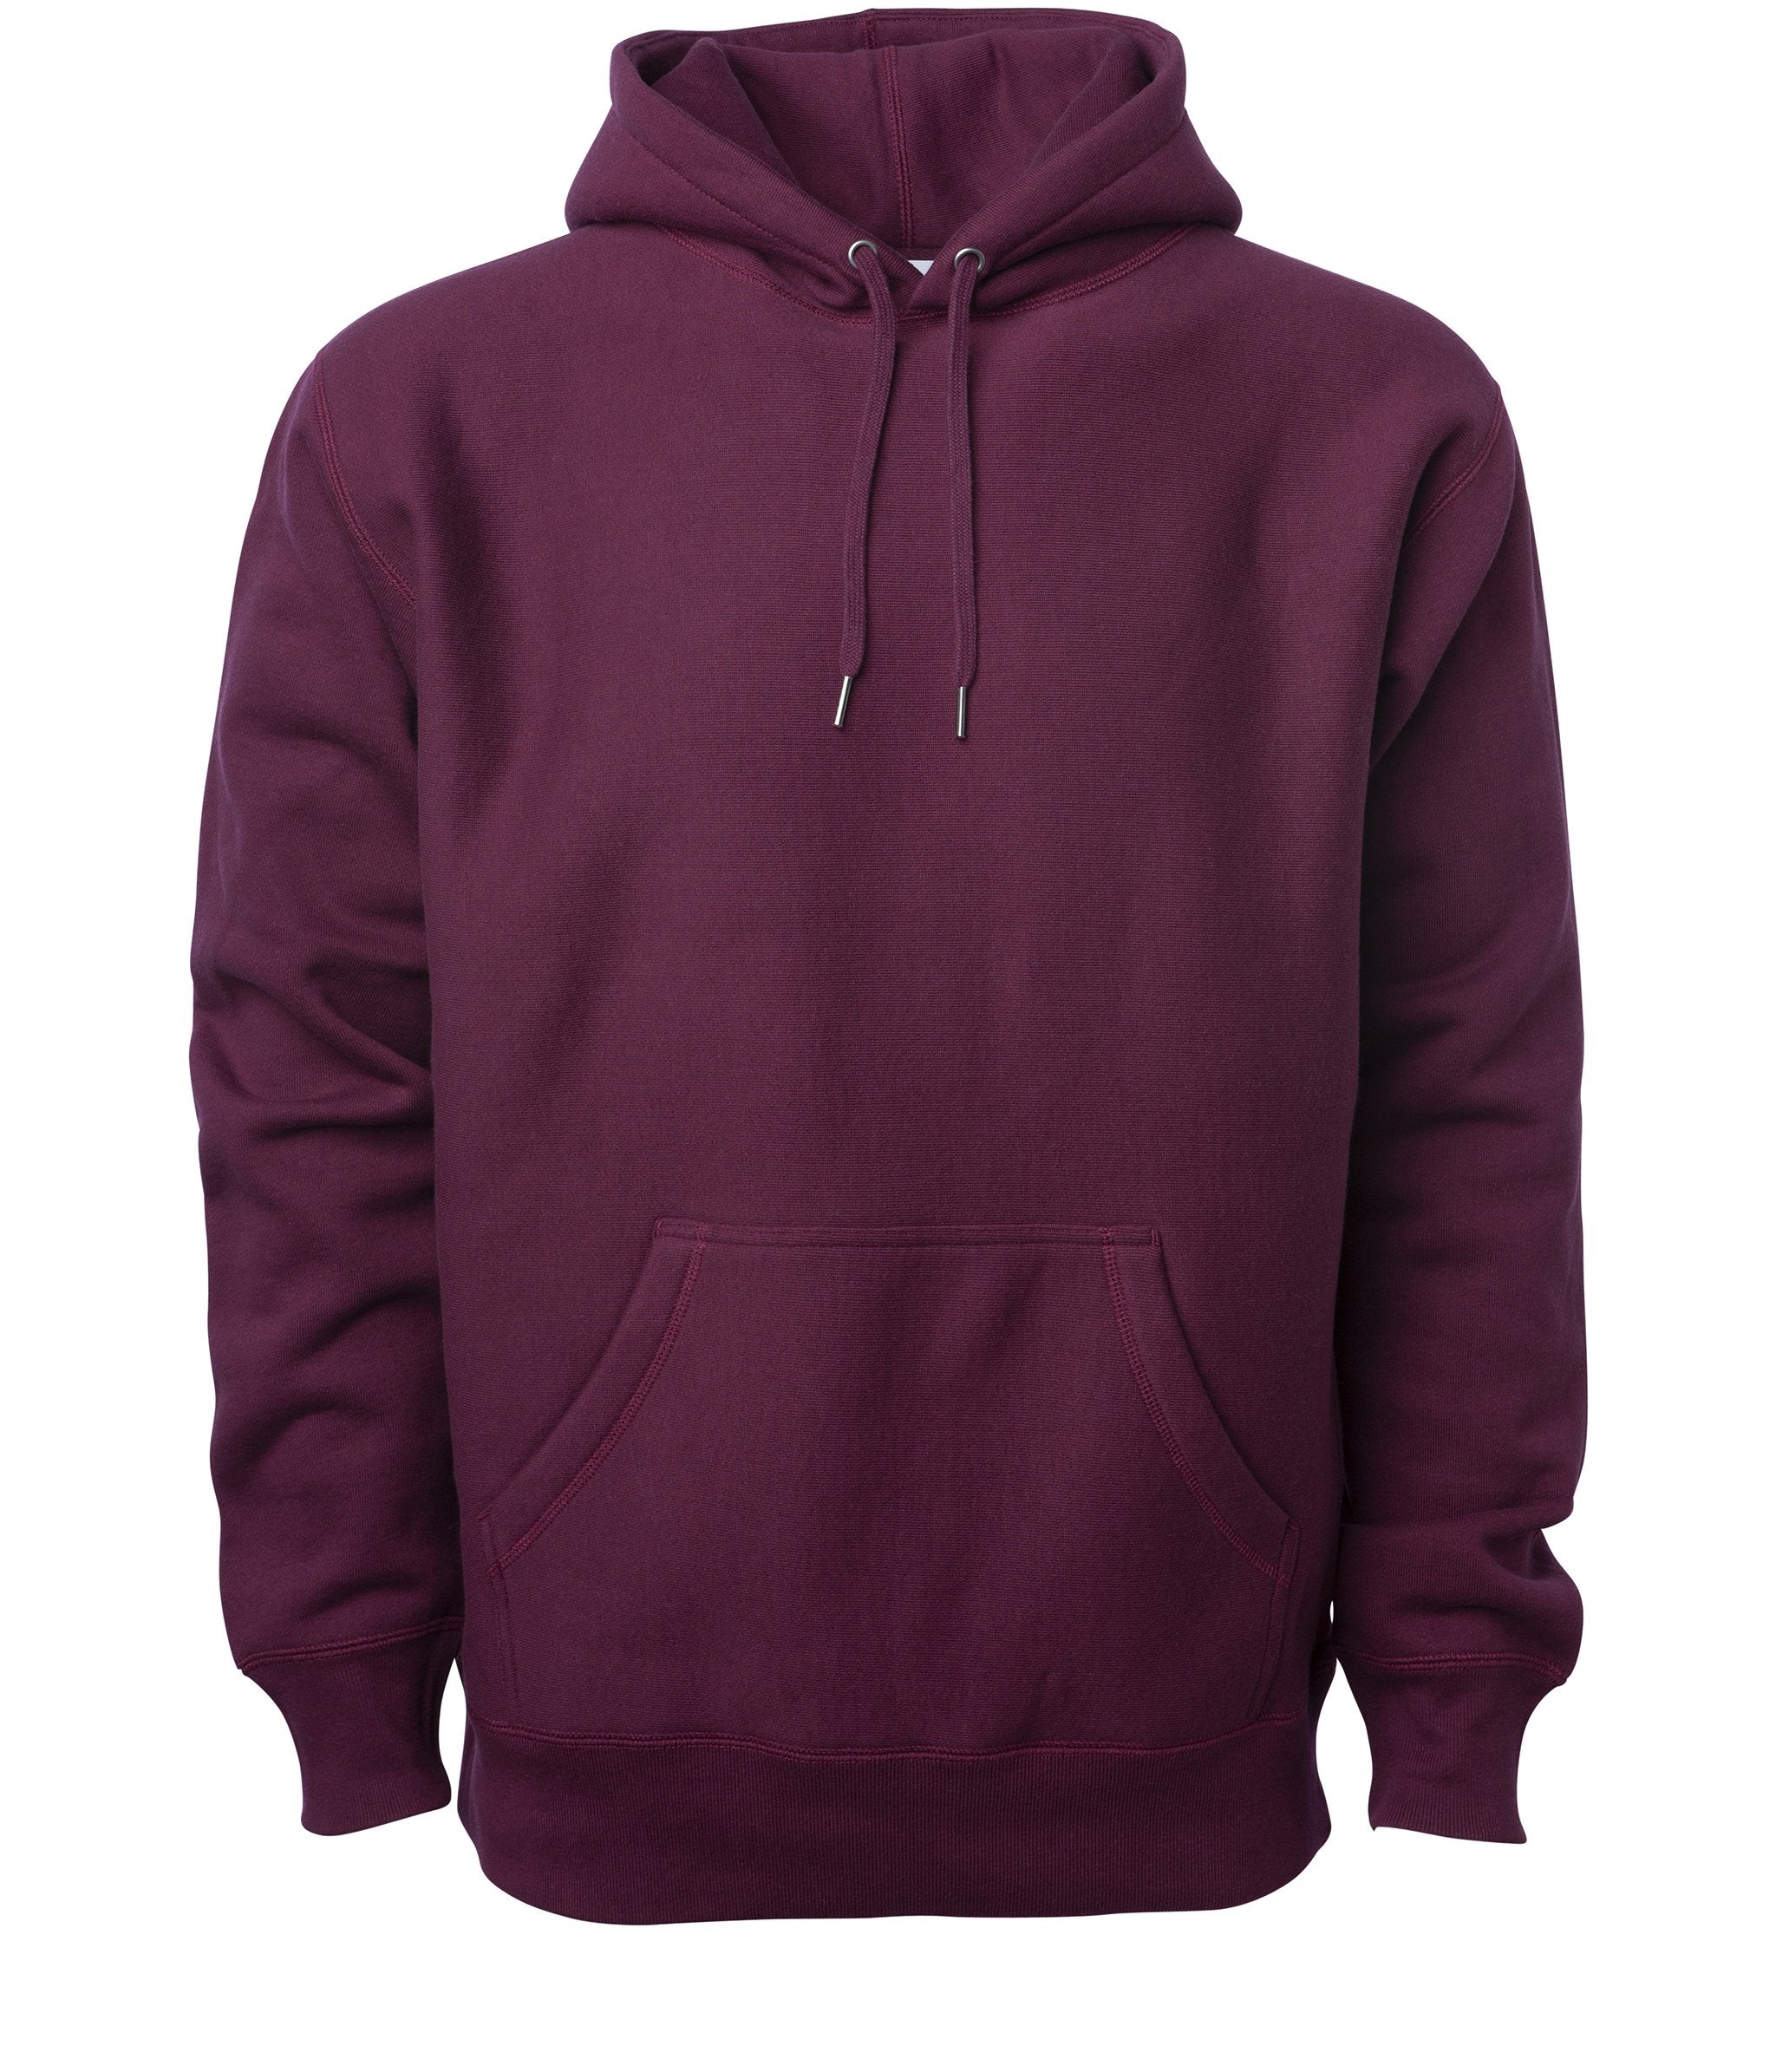 maroon colour hoodie